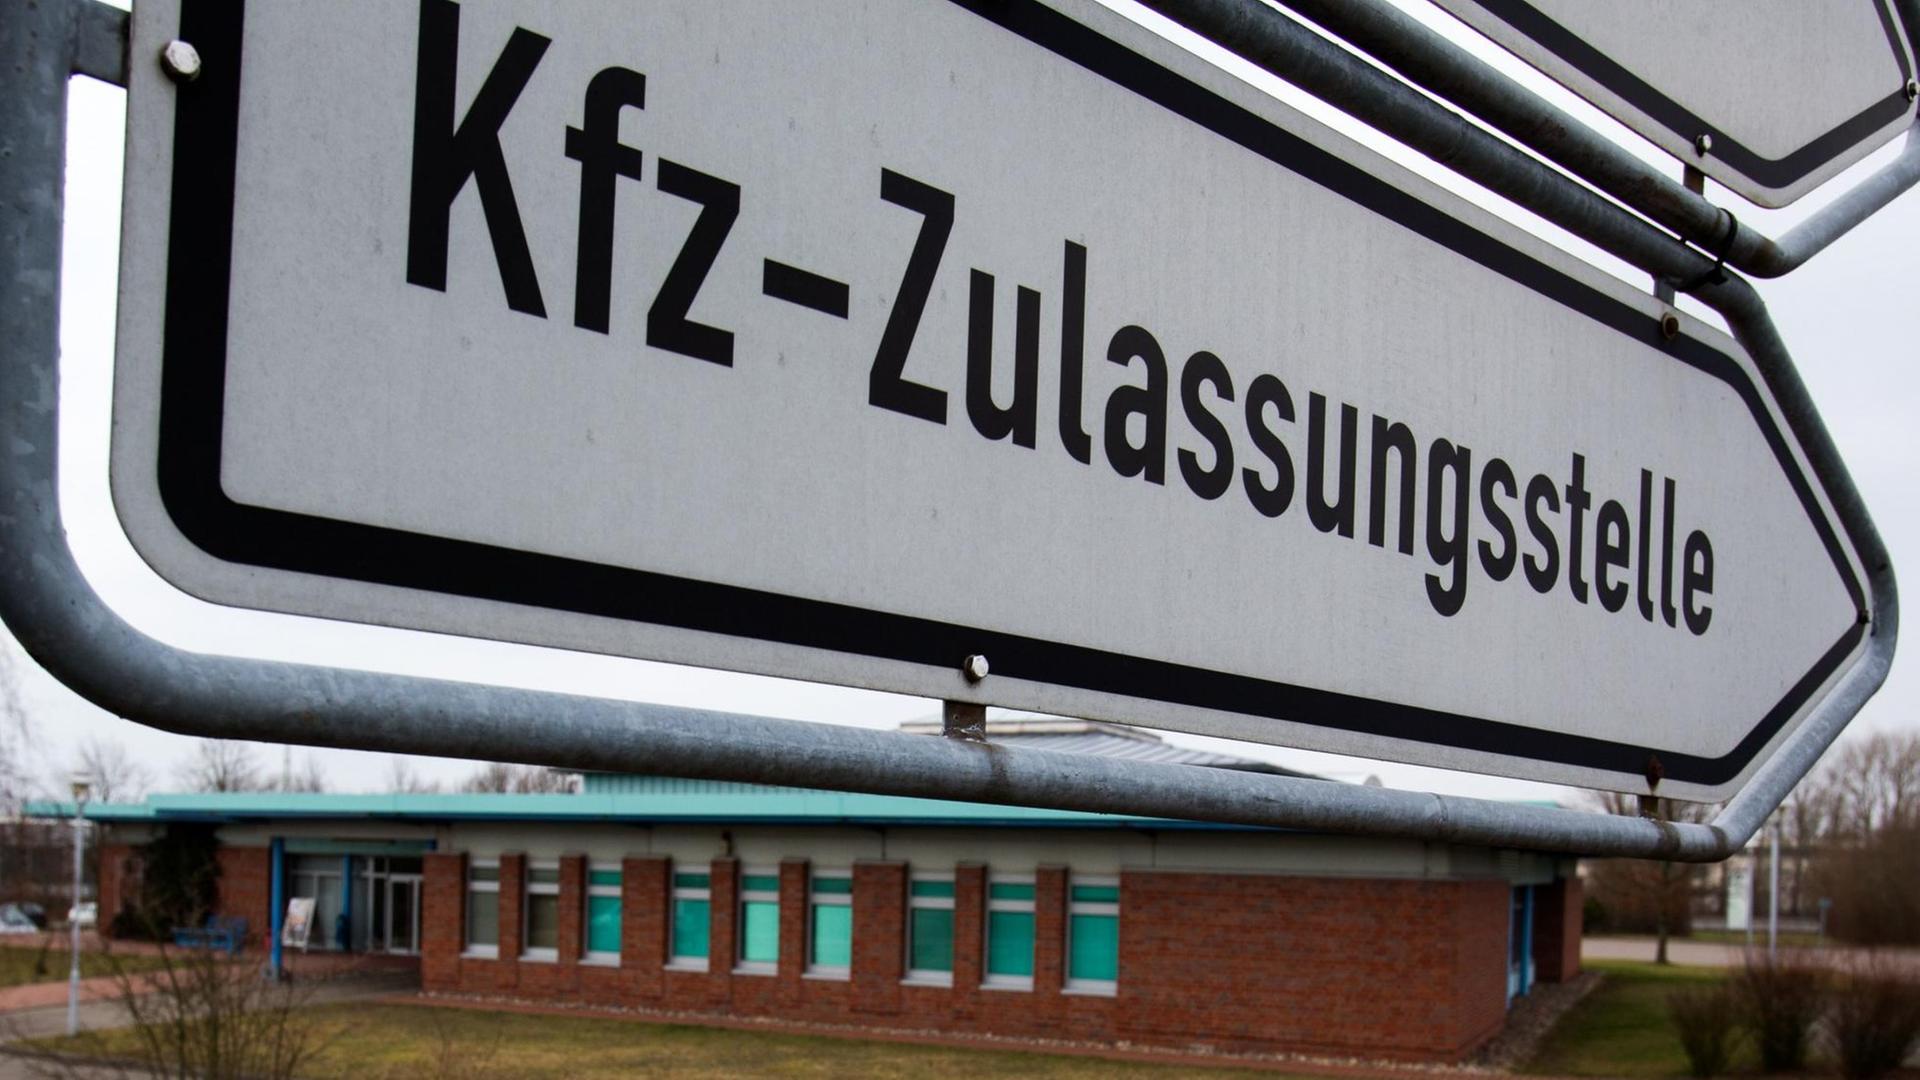 Ein Wegweiser mit der Aufschrift "Kfz-Zulassungsstelle" in Schwerin (Mecklenburg-Vorpommern)